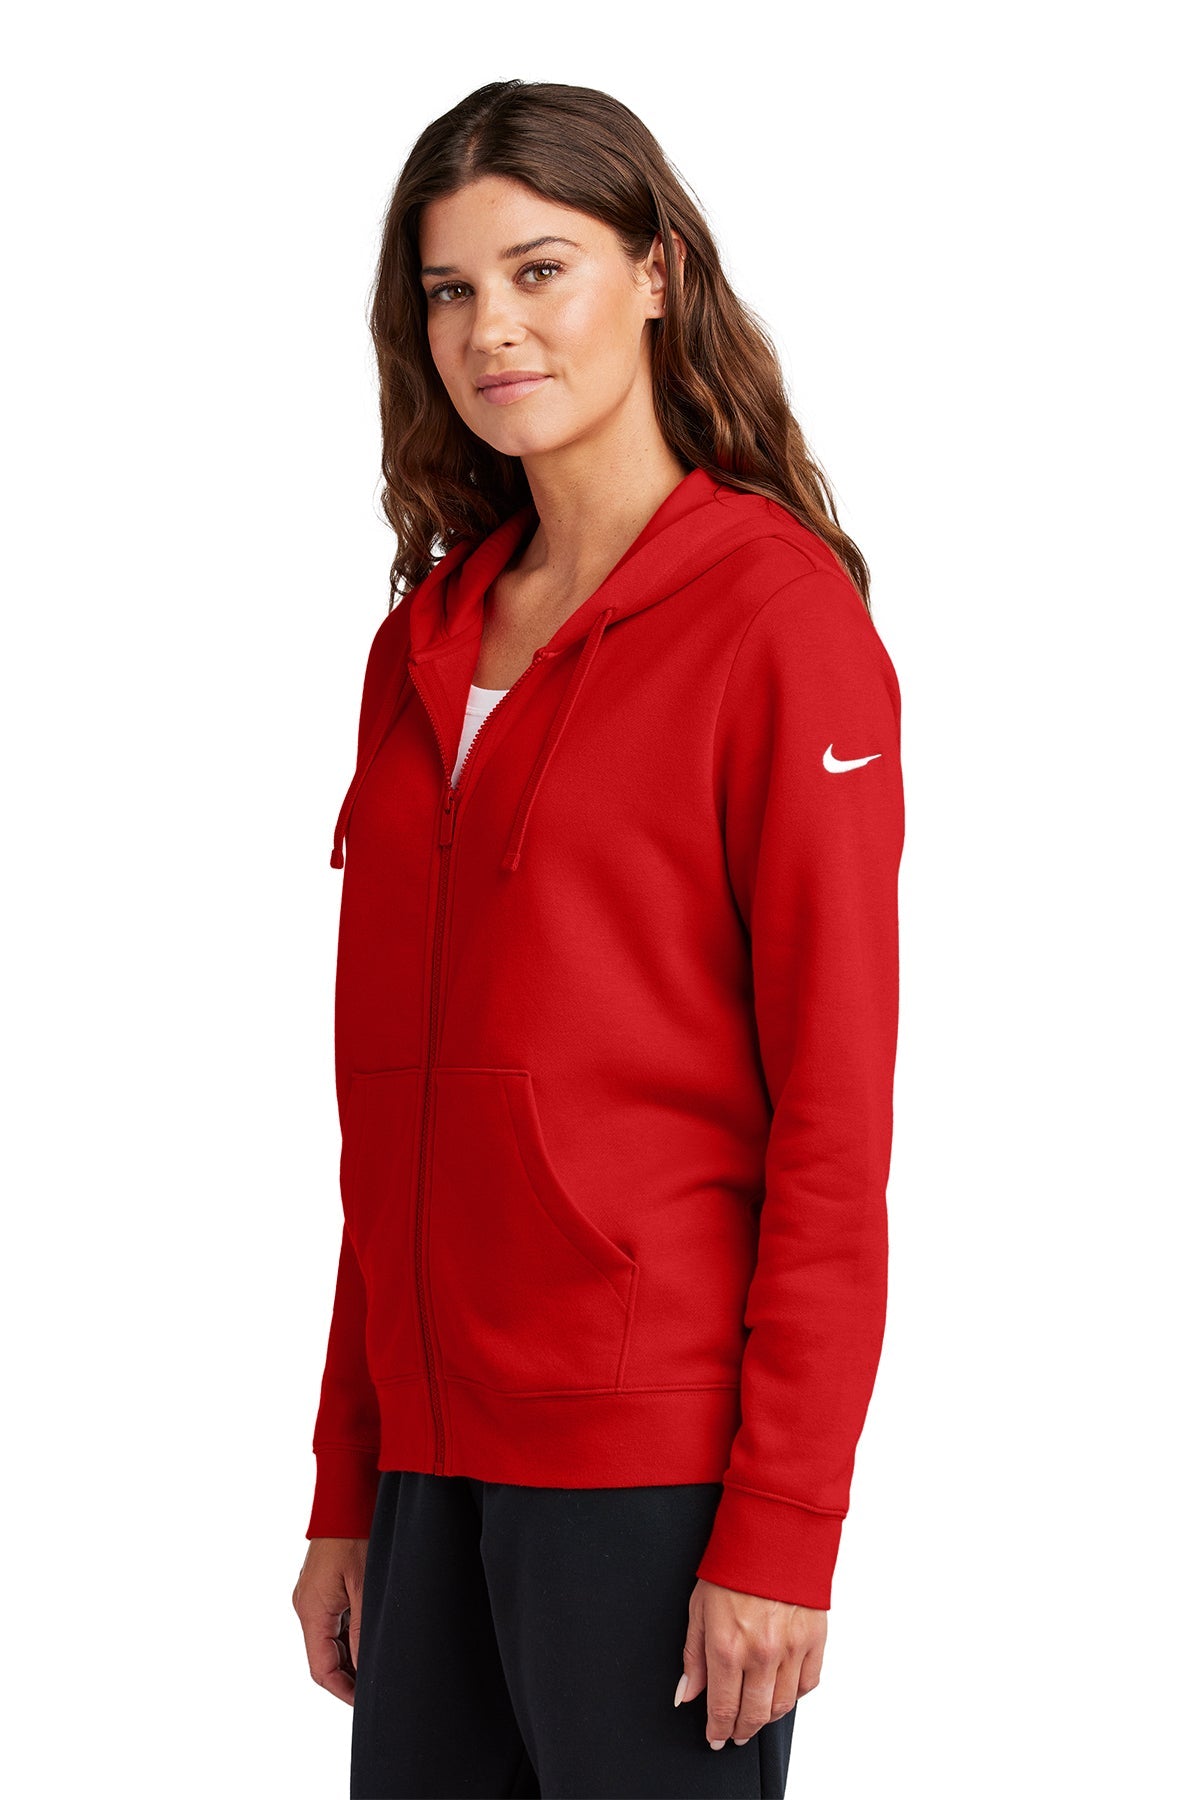 Nike Ladies Club Fleece Full-Zip Custom Hoodies, University Red